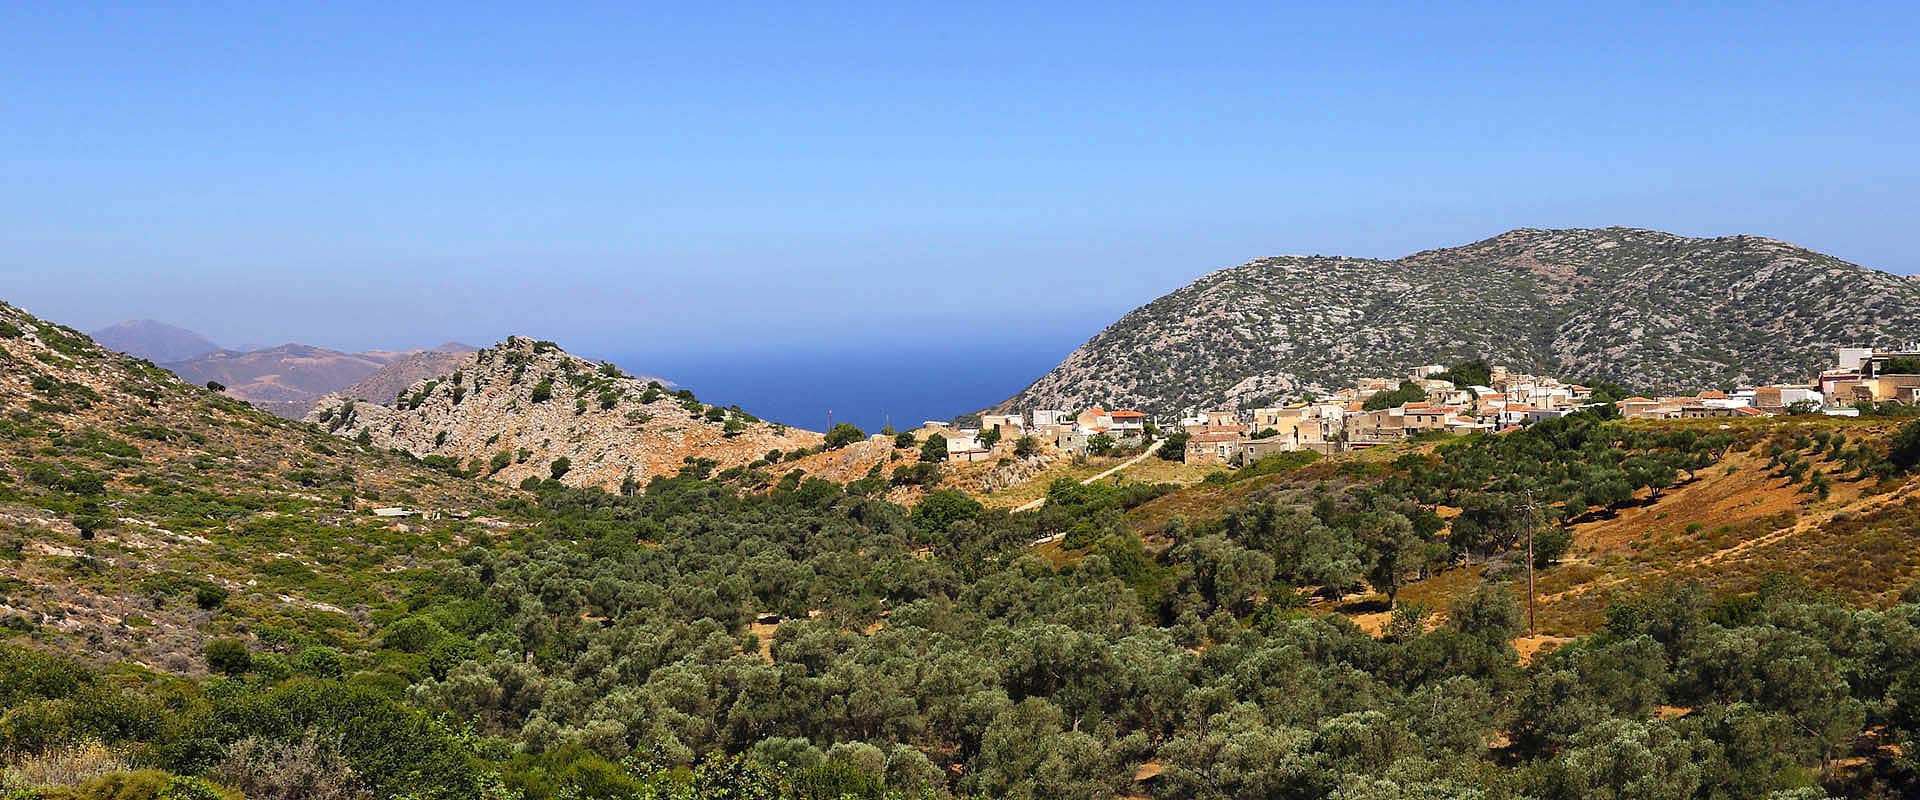 Økoturisme hotelvillaer på Kreta, Grækenland